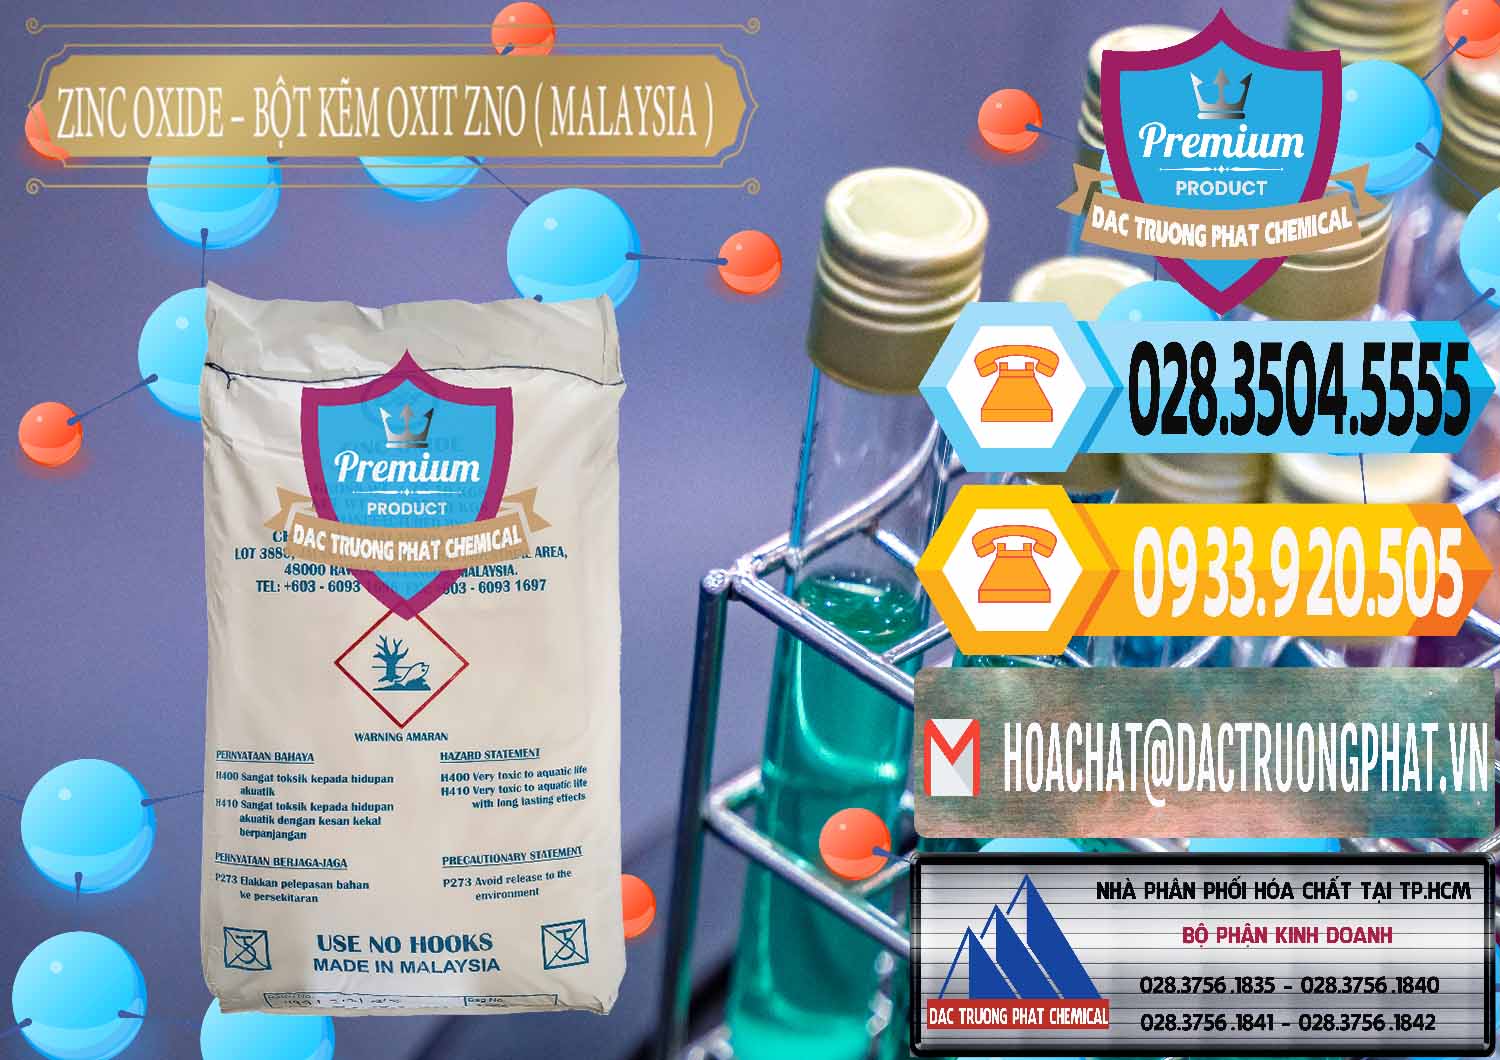 Chuyên bán _ phân phối Zinc Oxide - Bột Kẽm Oxit ZNO Malaysia - 0179 - Cty chuyên bán - phân phối hóa chất tại TP.HCM - hoachattayrua.net